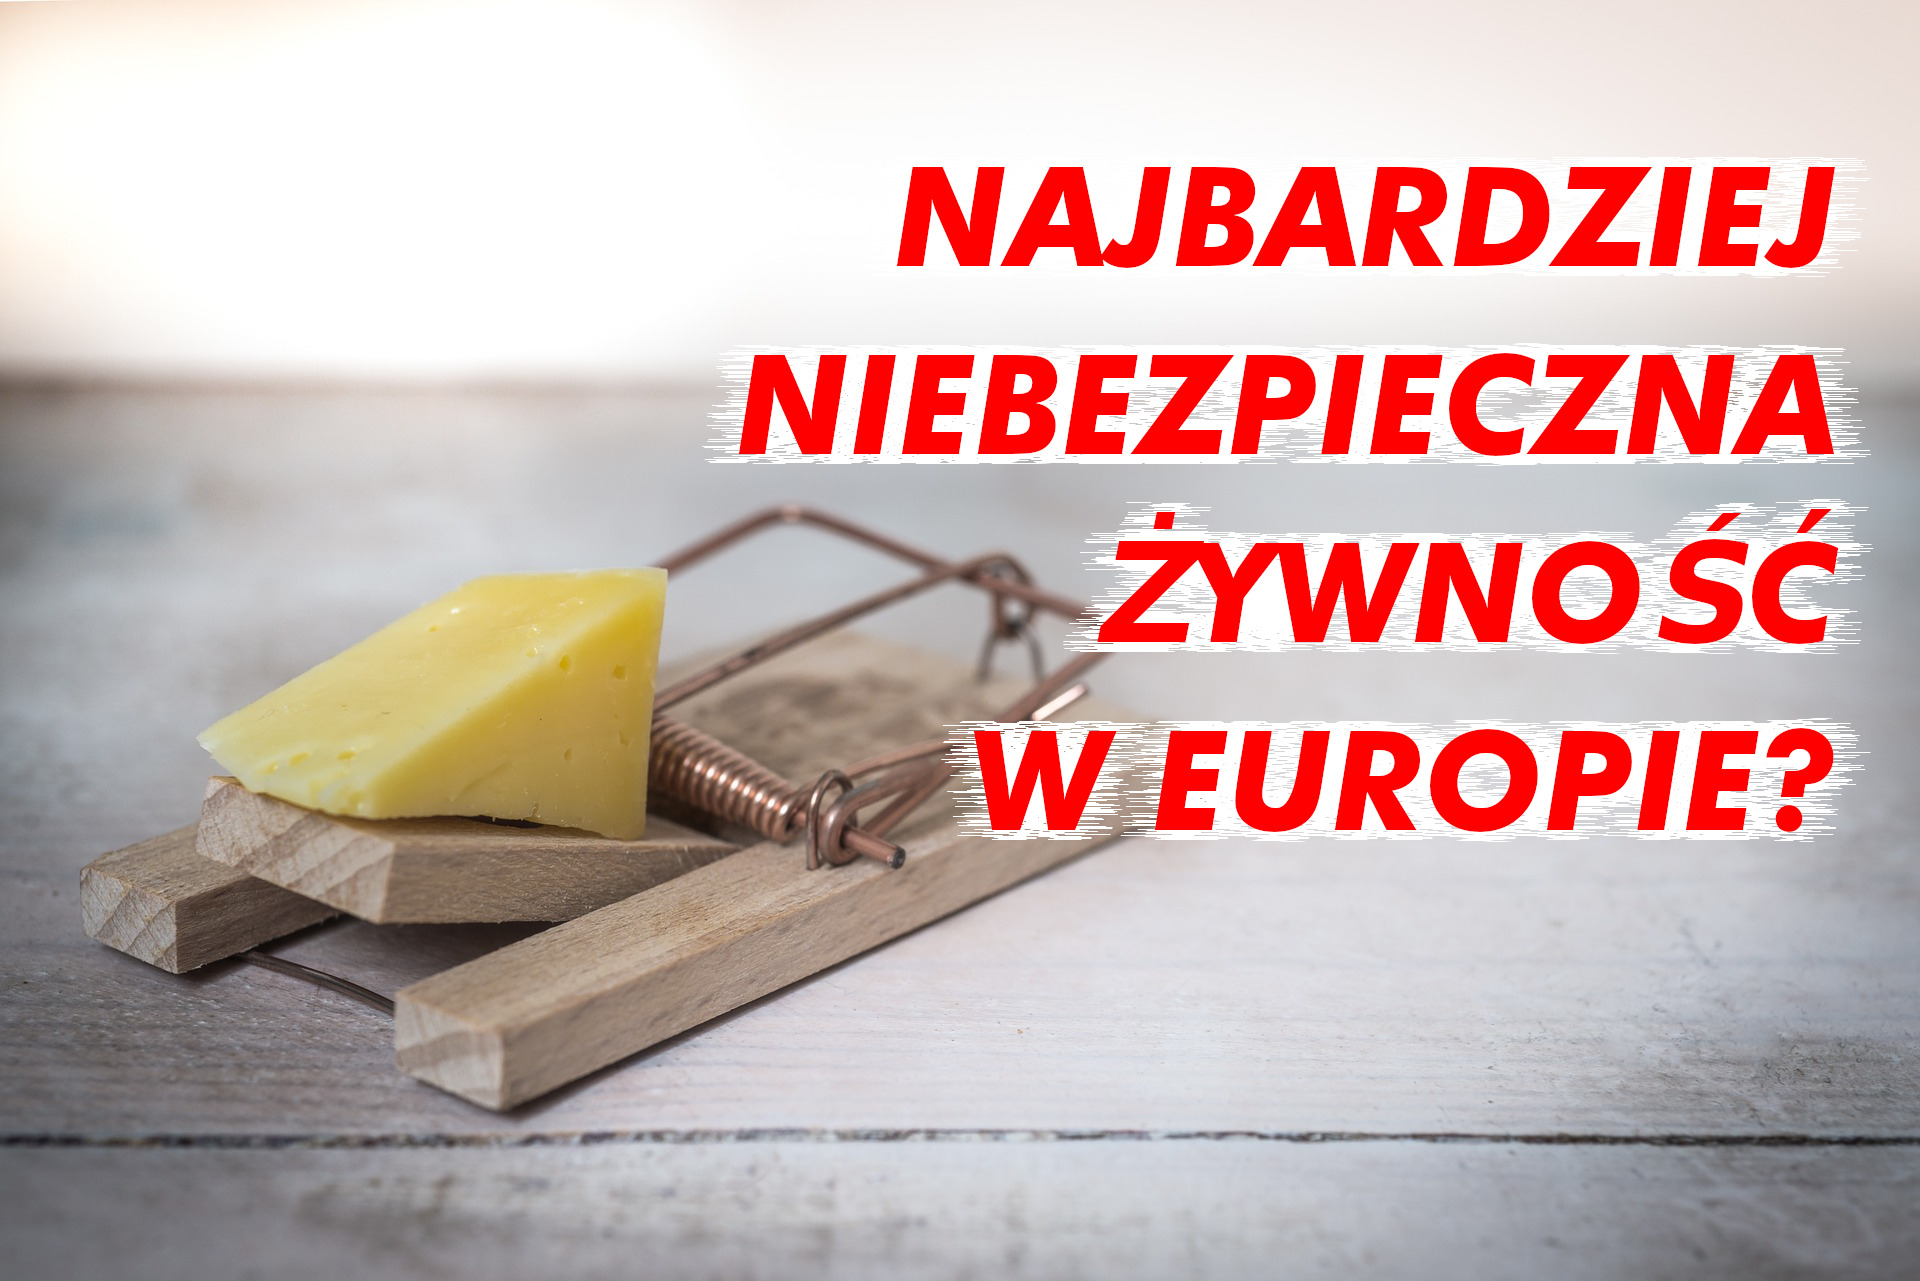 Problem zanieczyszczonej i niebezpiecznej polskiej żywności - NIK wydaje alarmujące ostrzeżenie.